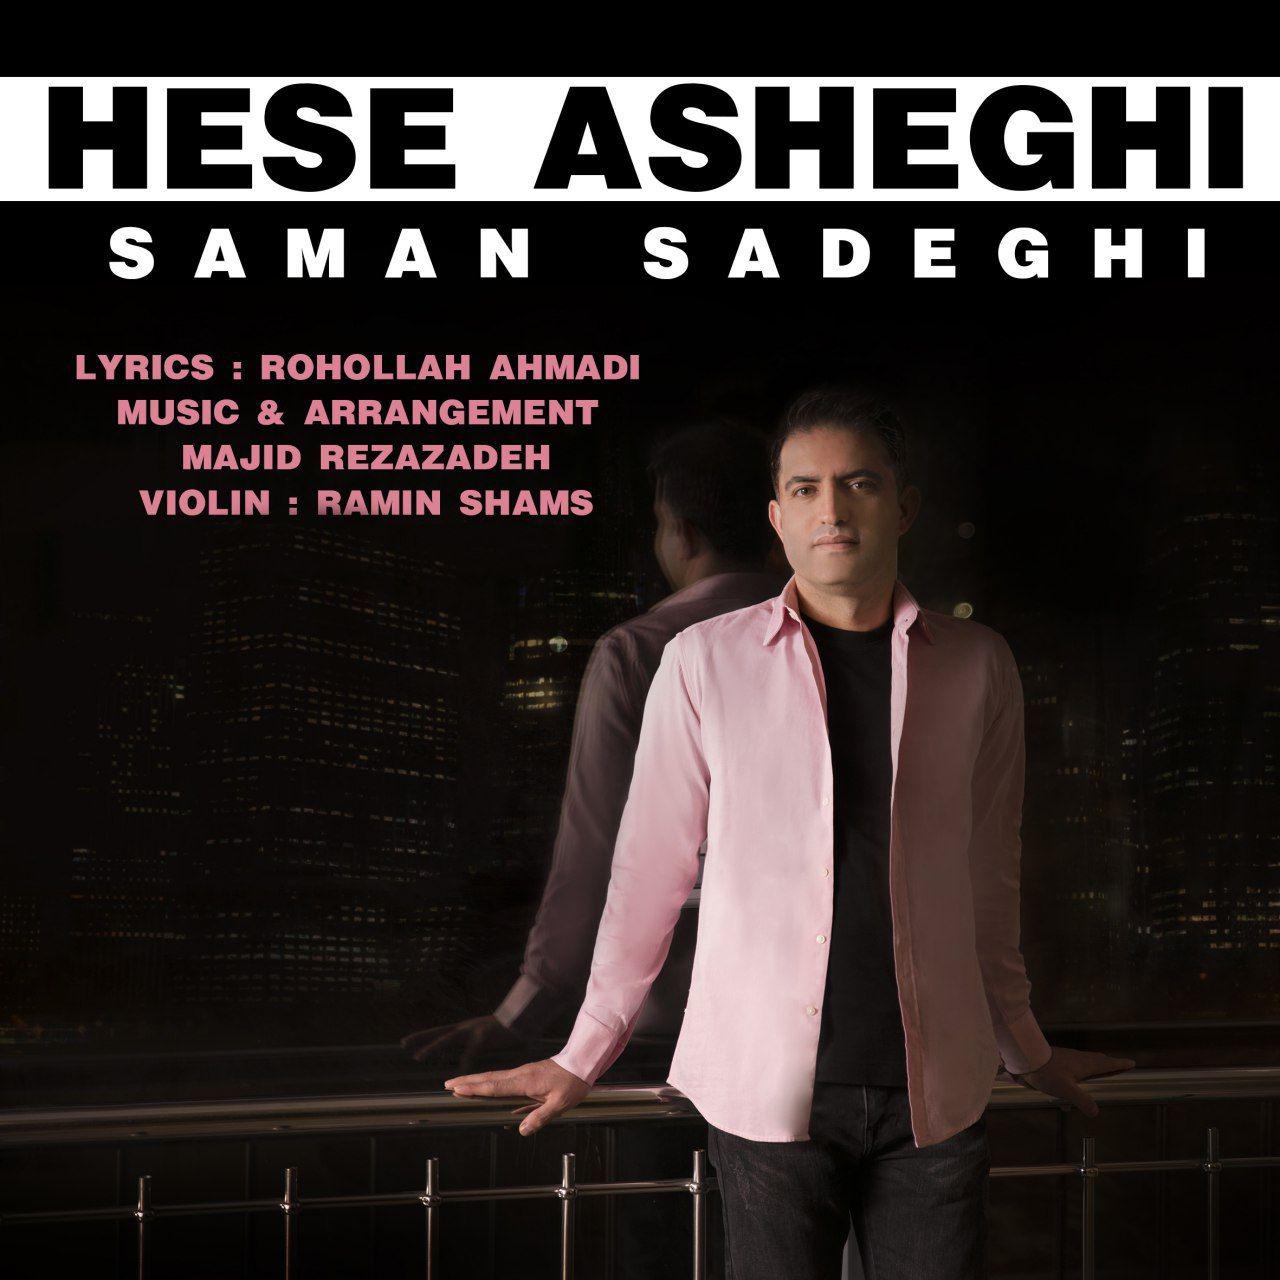  دانلود آهنگ جدید سامان صادقی - حس عاشقی | Download New Music By Saman Sadeghi - Hese Asheghi